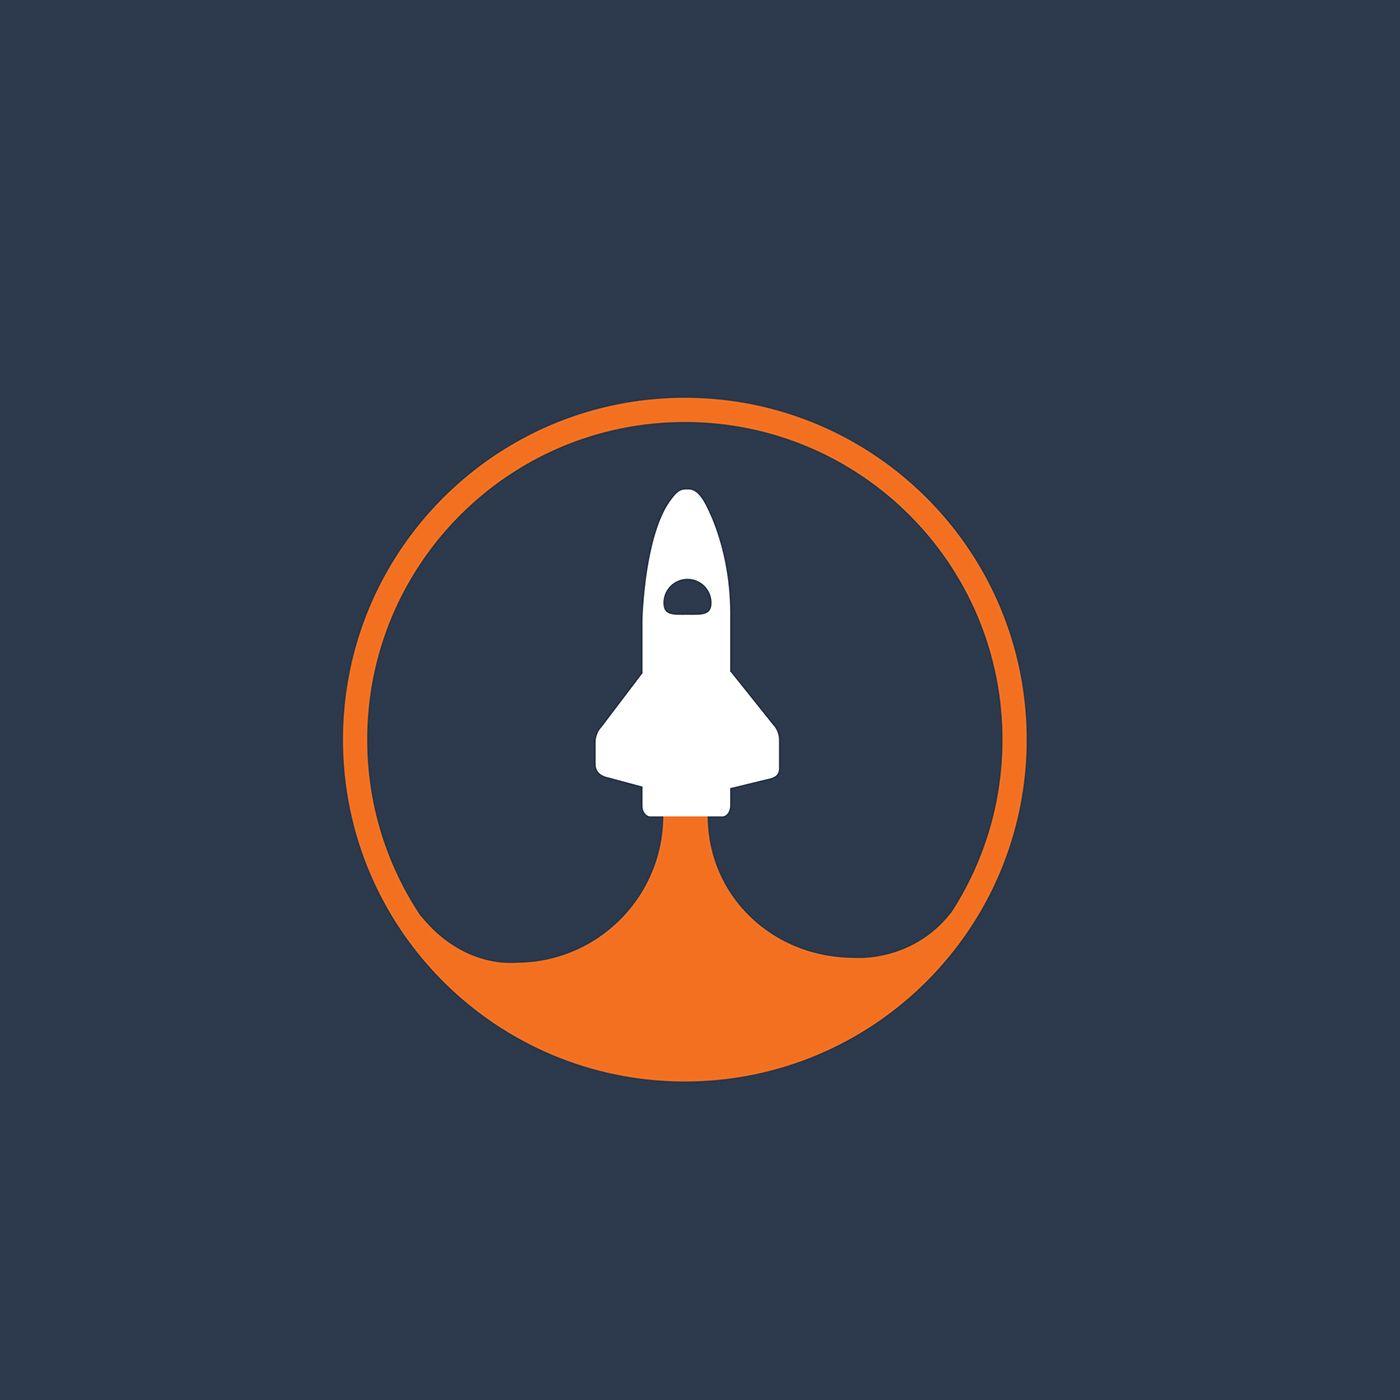 Spaceship Logo - Daily logo - Spaceship on Behance